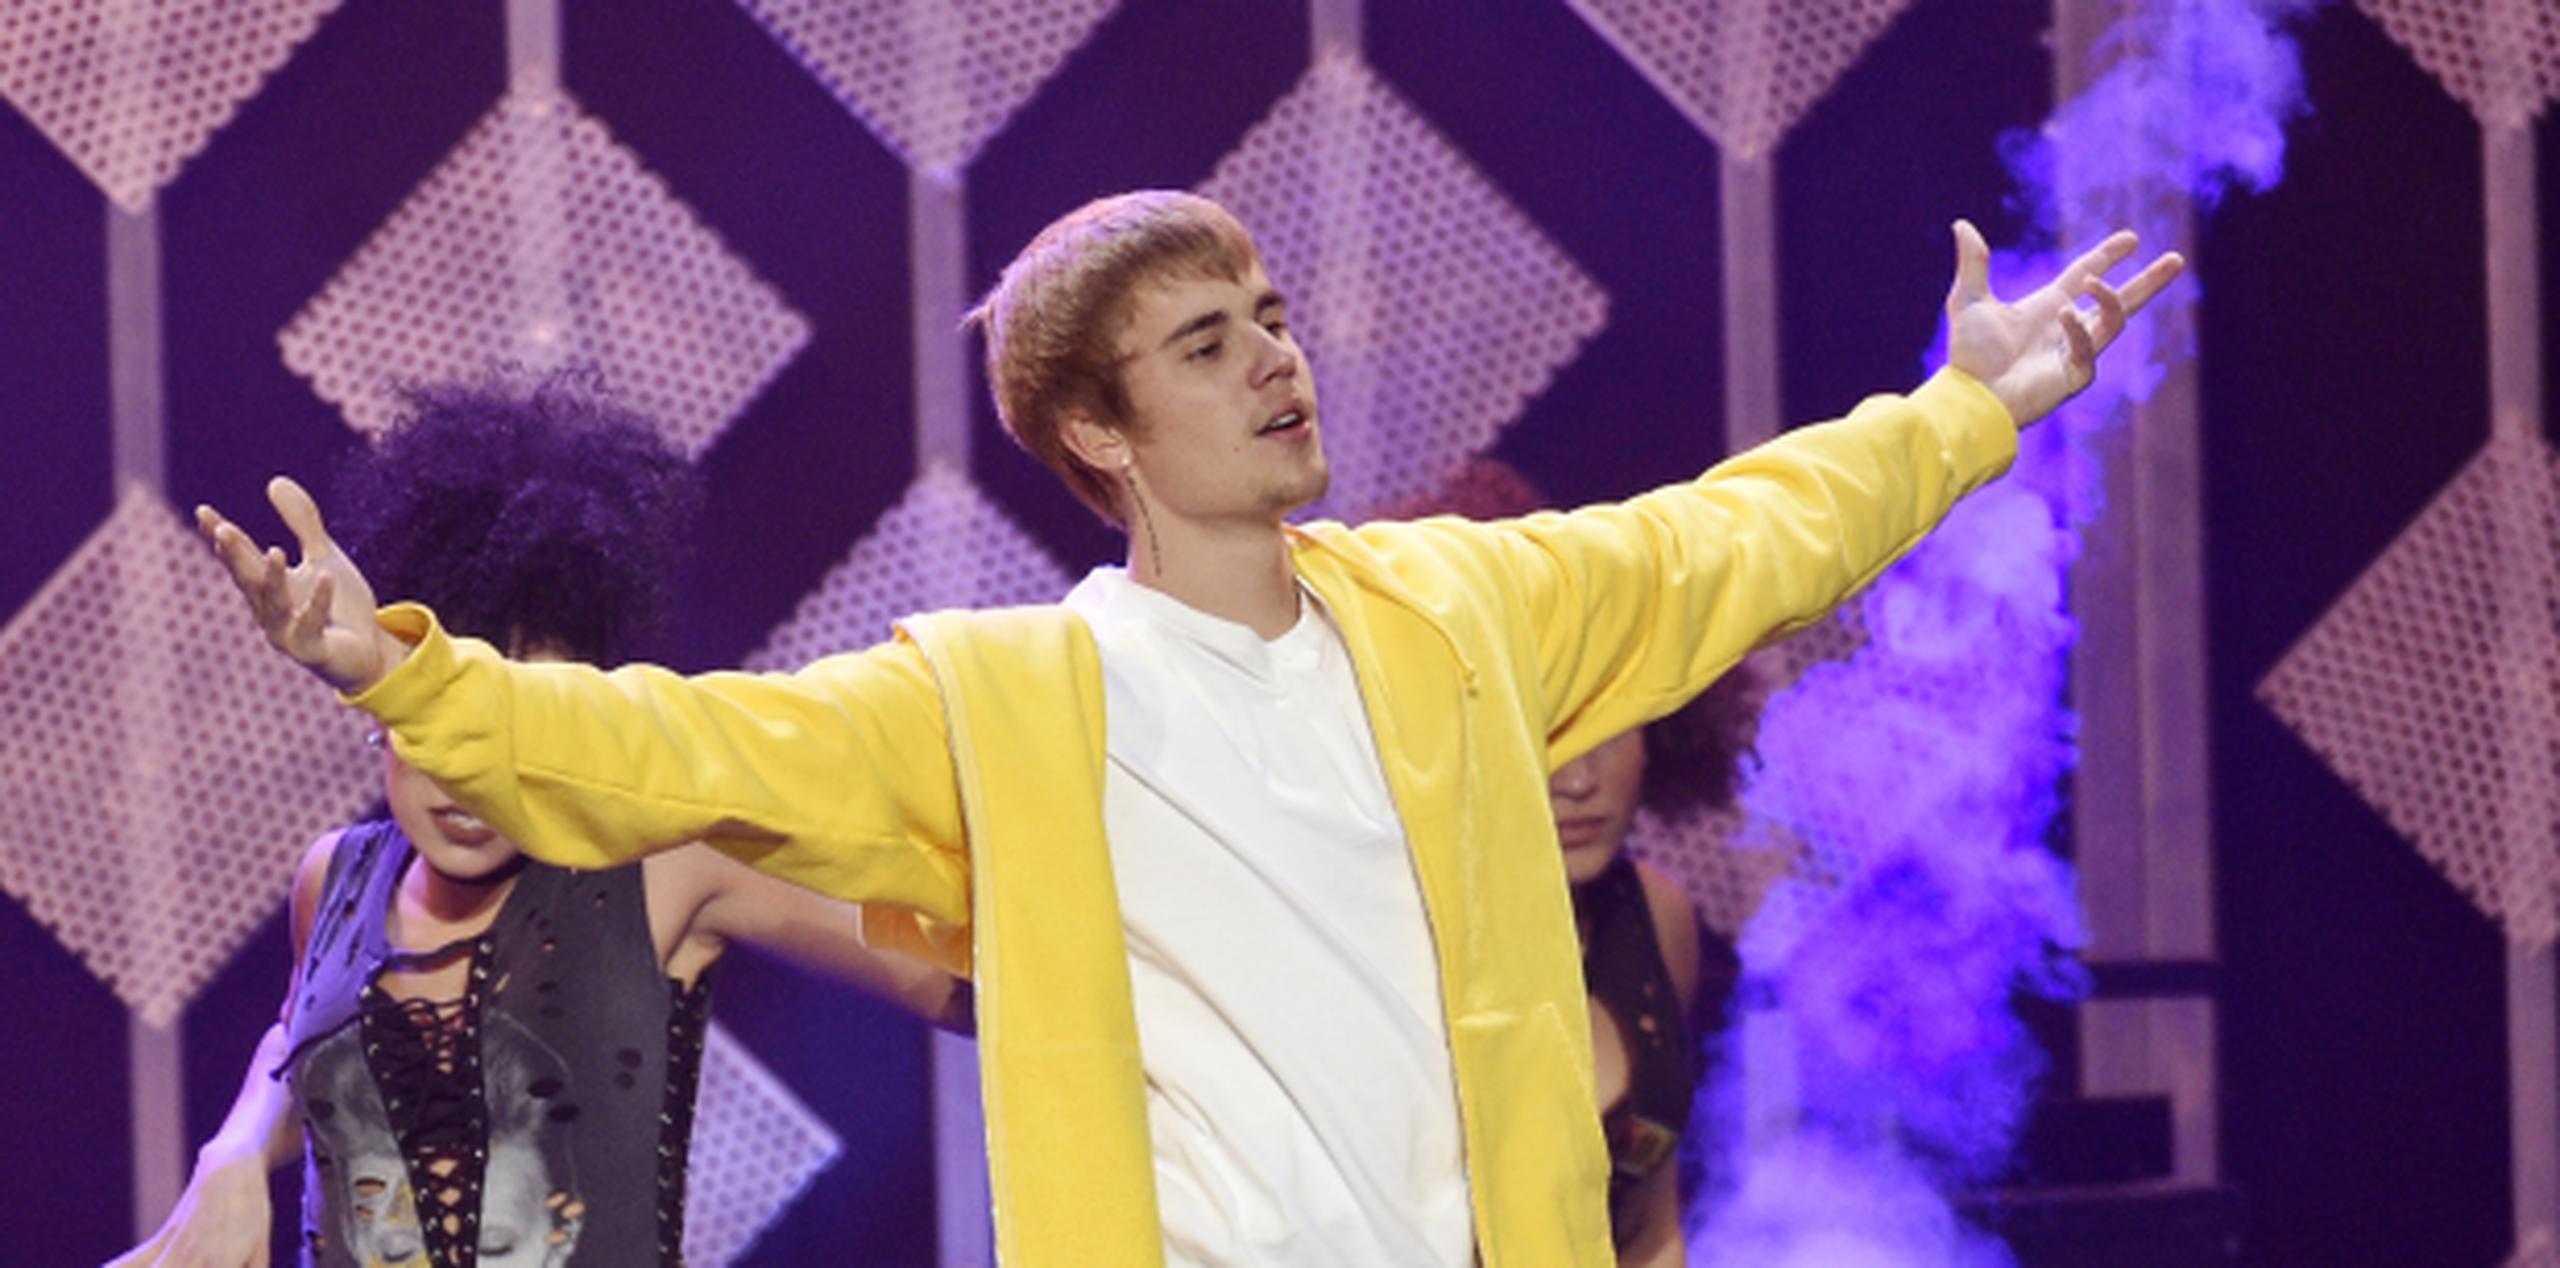 Bieber ha pedido disculpas por el incidente. (AP)